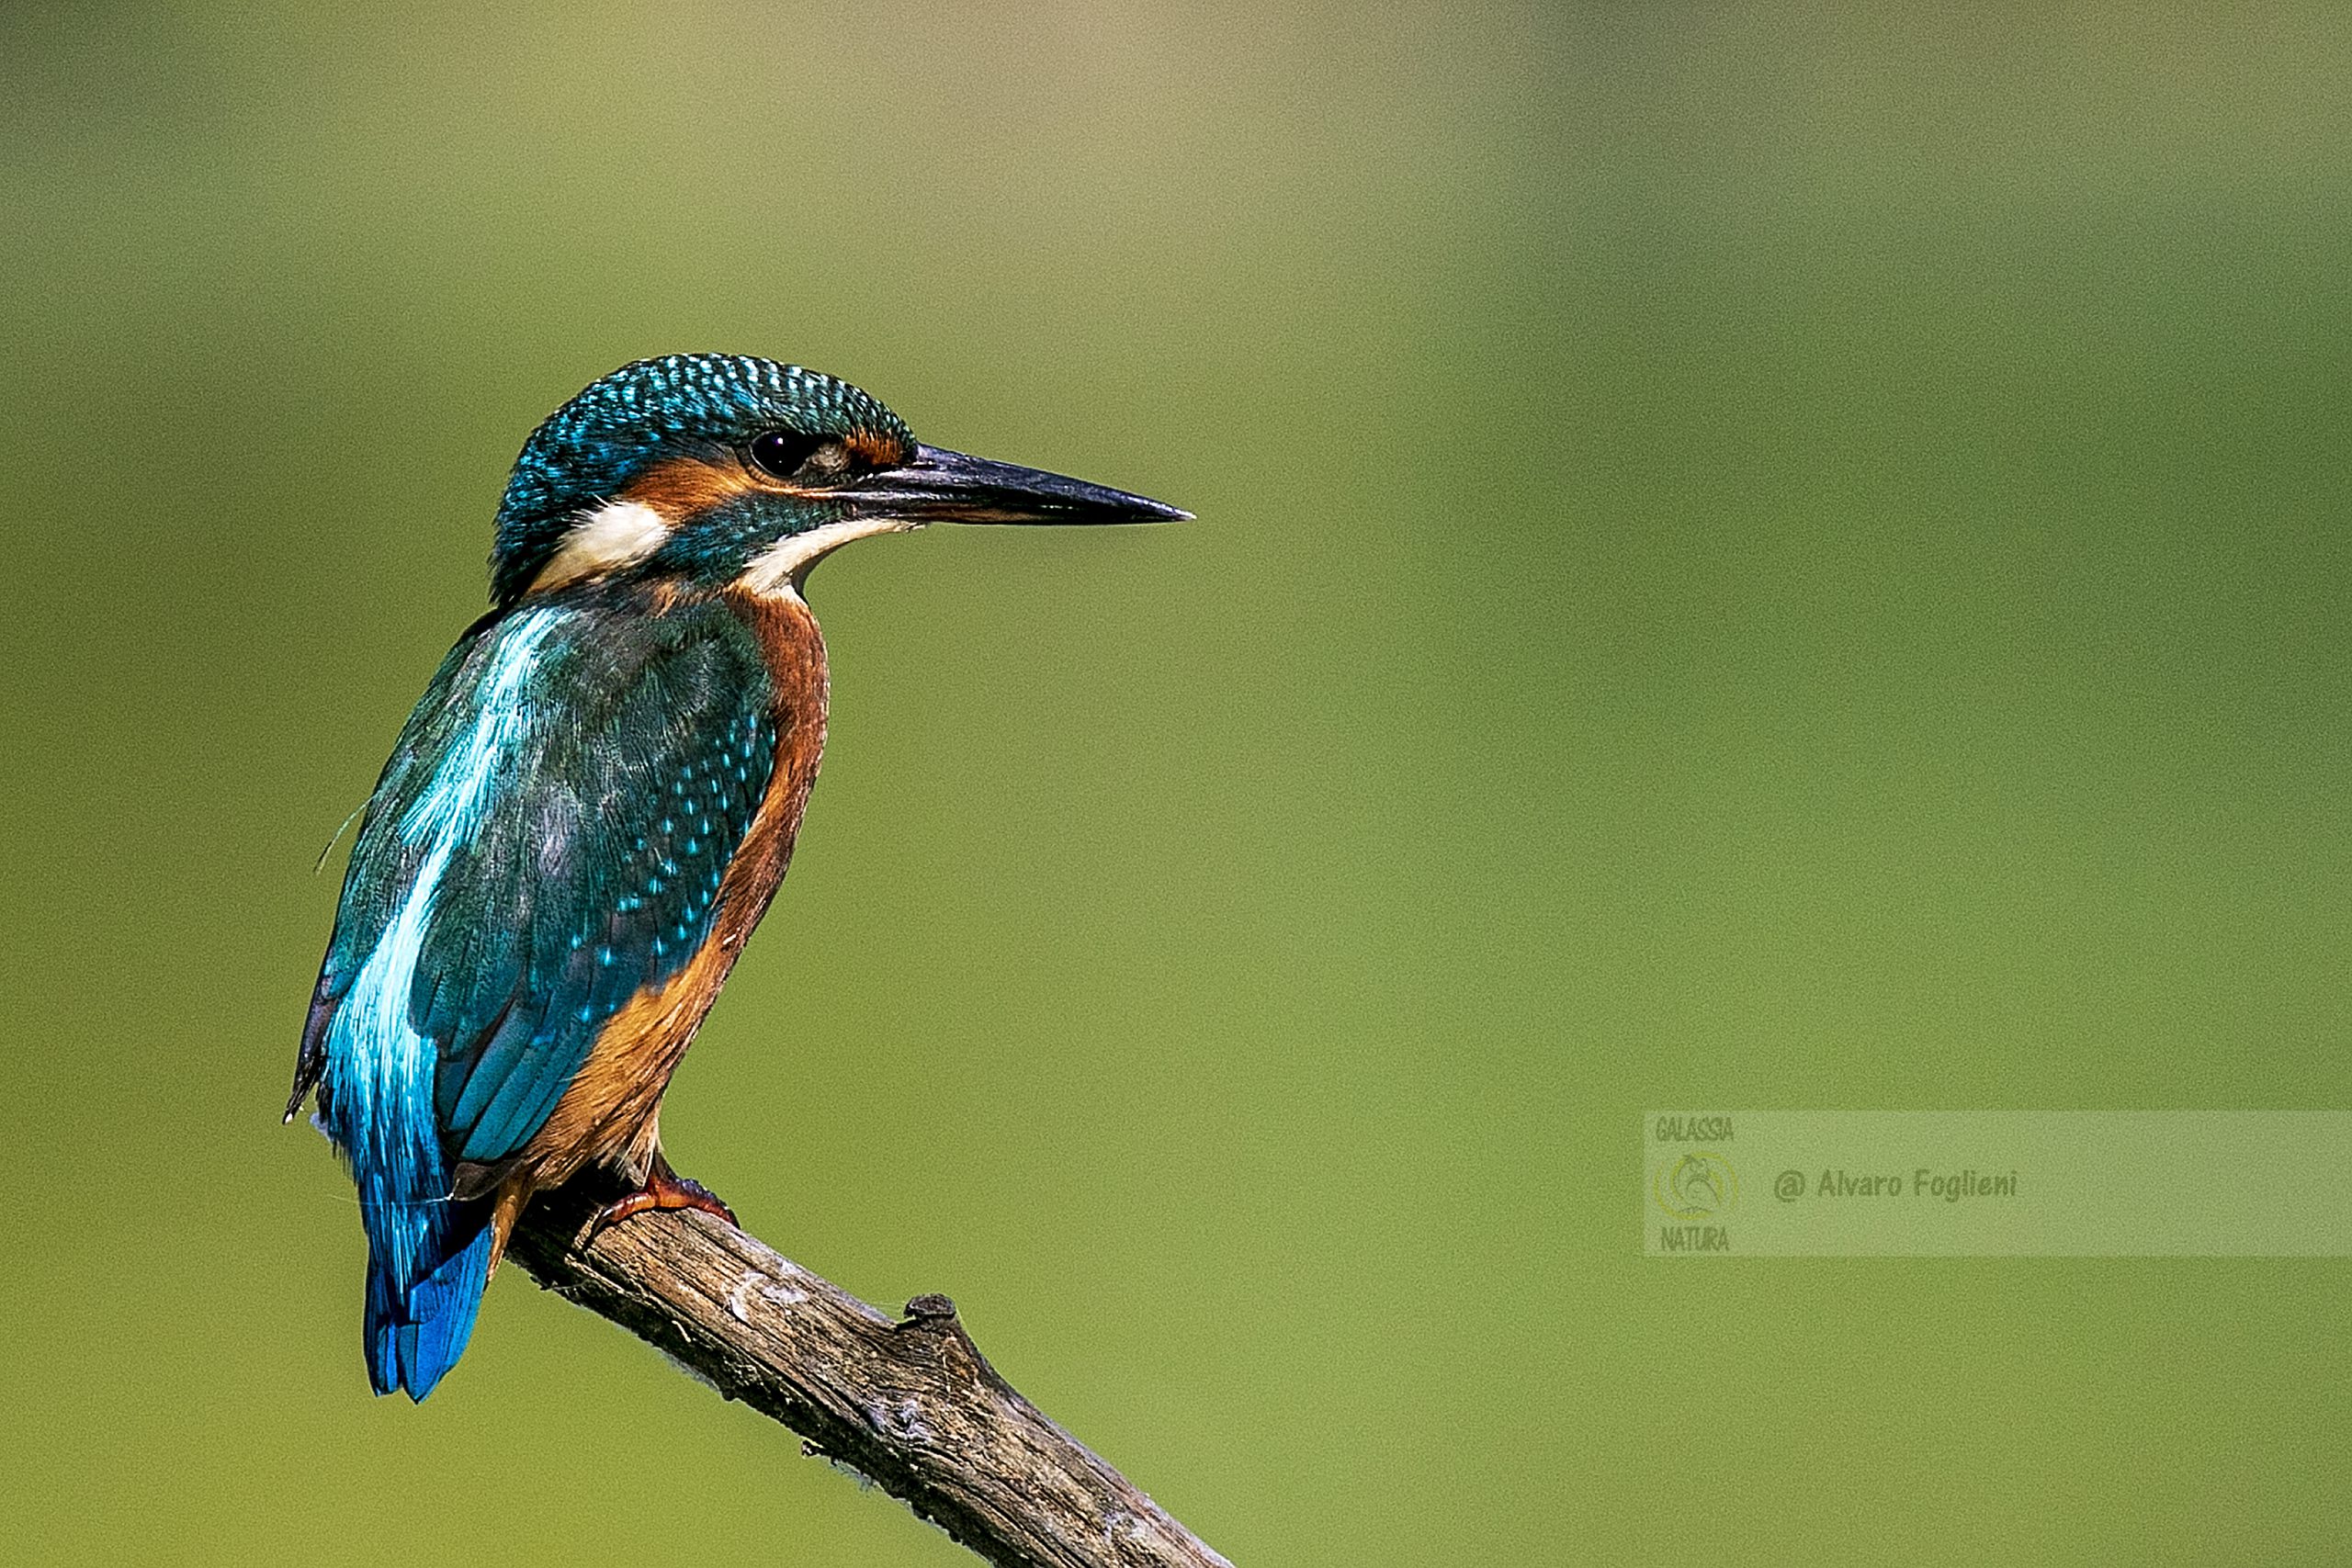 Martin pescatore, freccia blu, superficie dell'acqua, fischio acuto, avifauna, fotografia naturalistica, consigli